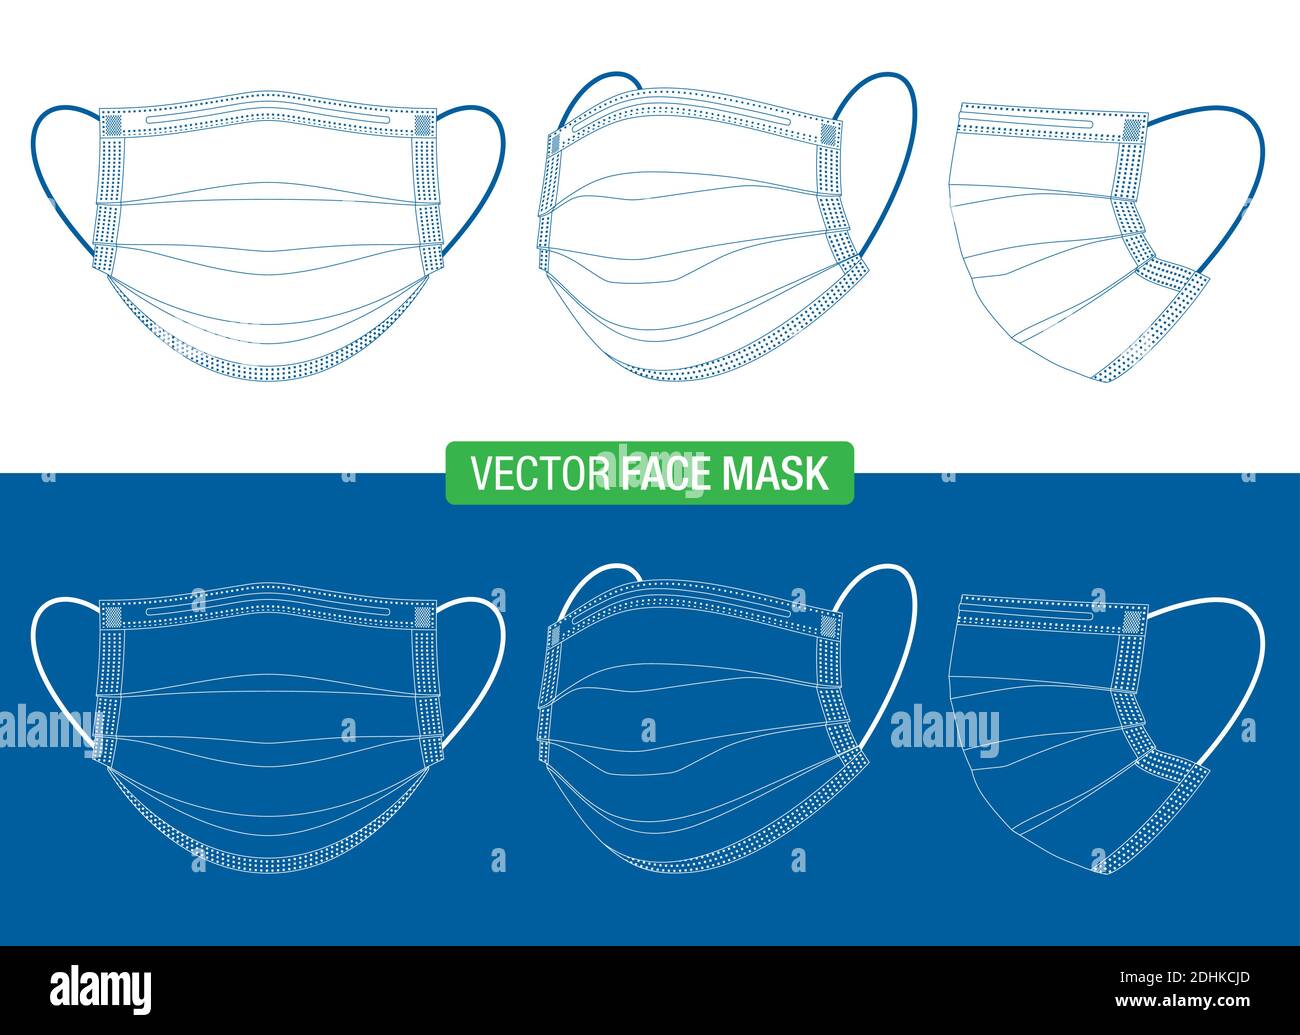 Disegno a linee delle maschere mediche per il viso in diversi angoli di visualizzazione. Modello vettoriale di maschere di protezione antivirus, di fronte, tre quarti, e viste laterali, isolati su bianco. Illustrazione Vettoriale